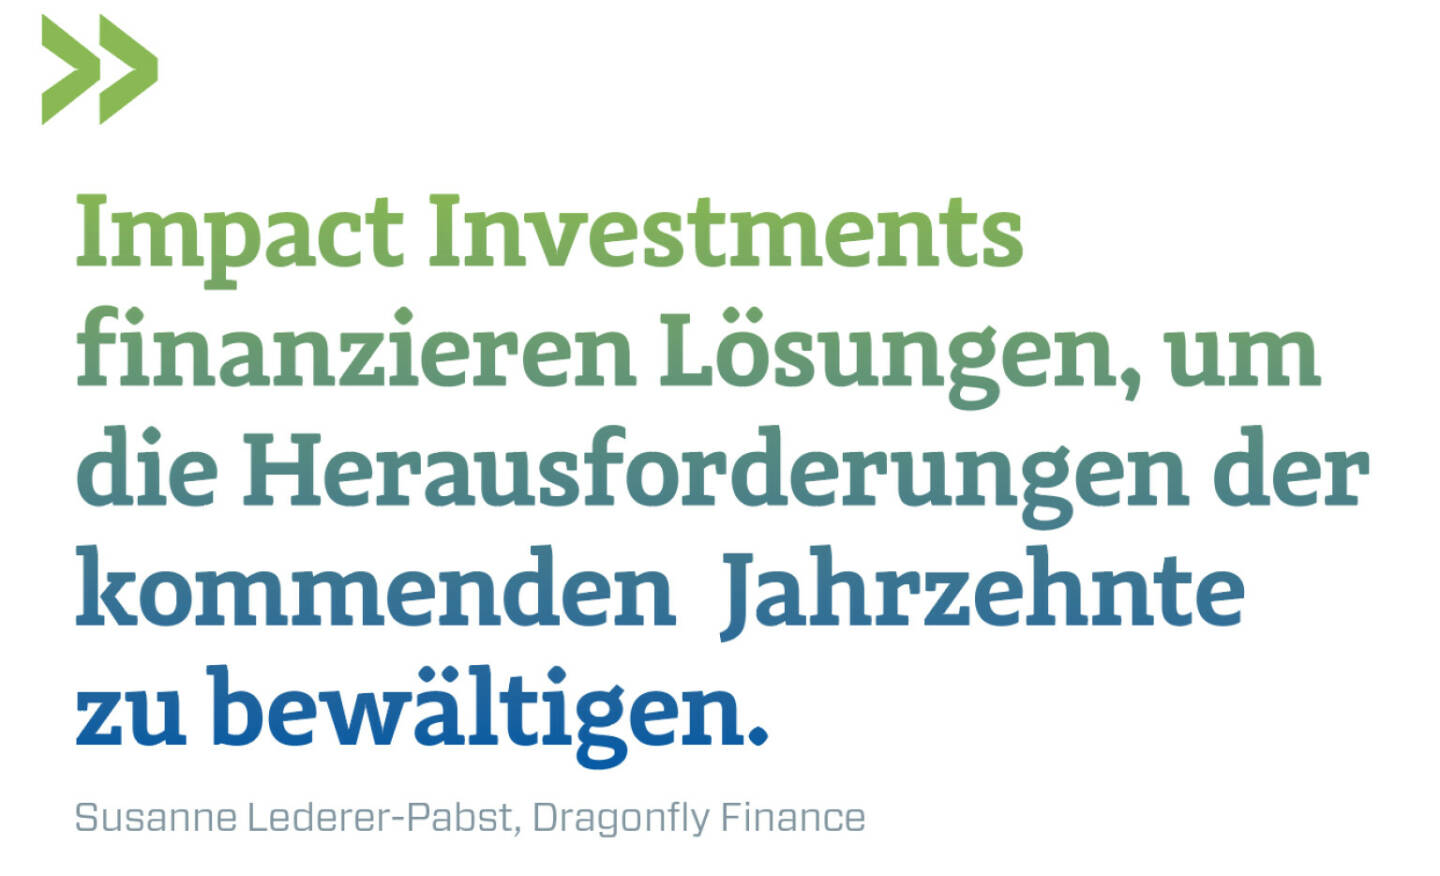 Impact Investments finanzieren Lösungen, um die Herausforderungen der kommenden  Jahrzehnte zu bewältigen.
Susanne Lederer-Pabst, Dragonfly Finance 